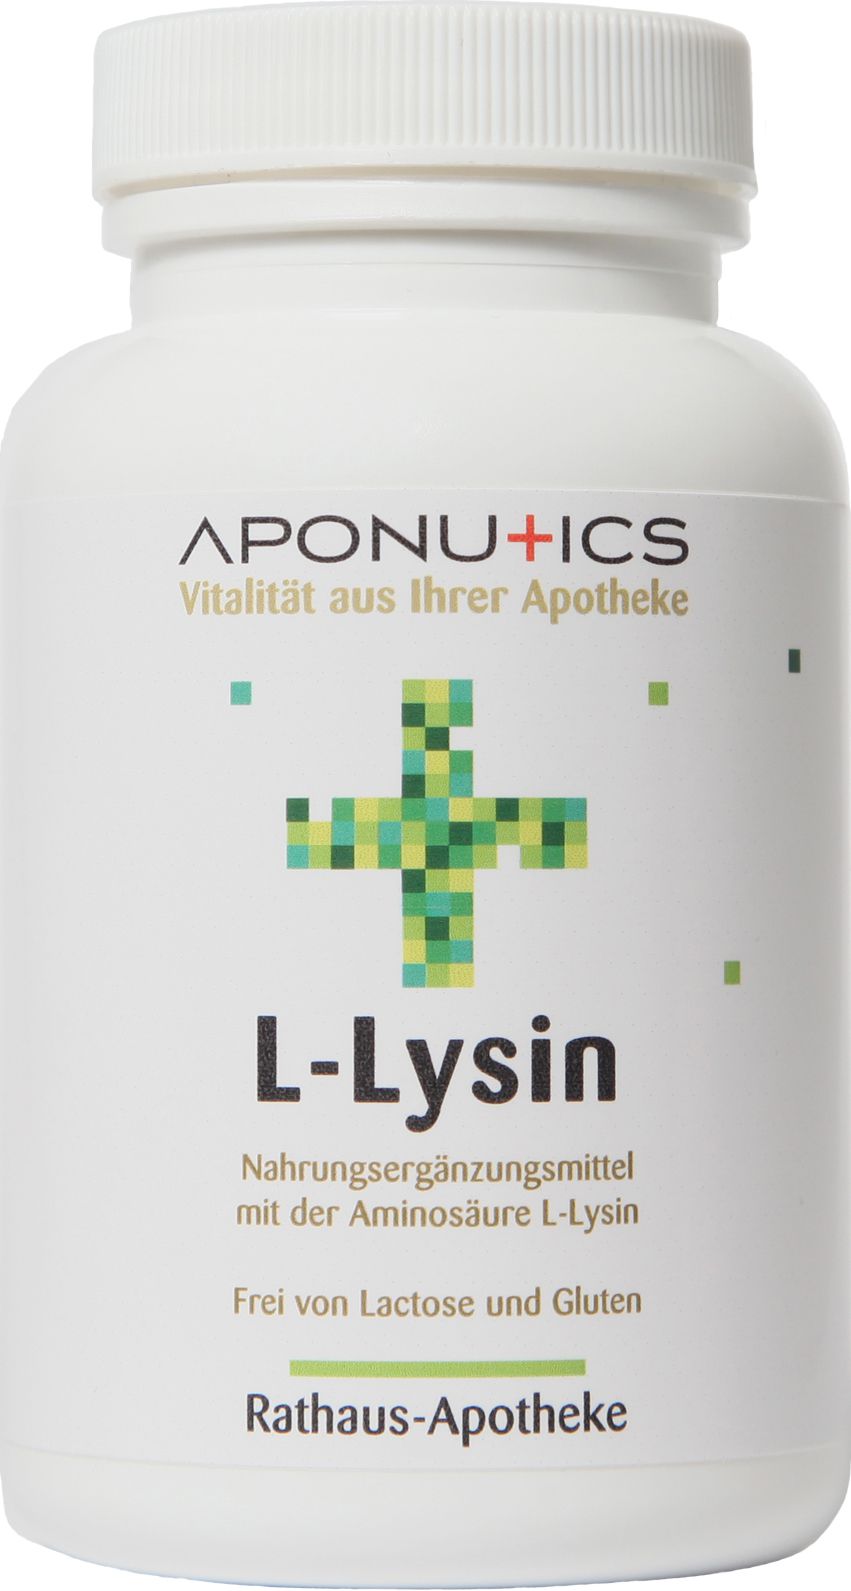 Aponutics L-Lysin